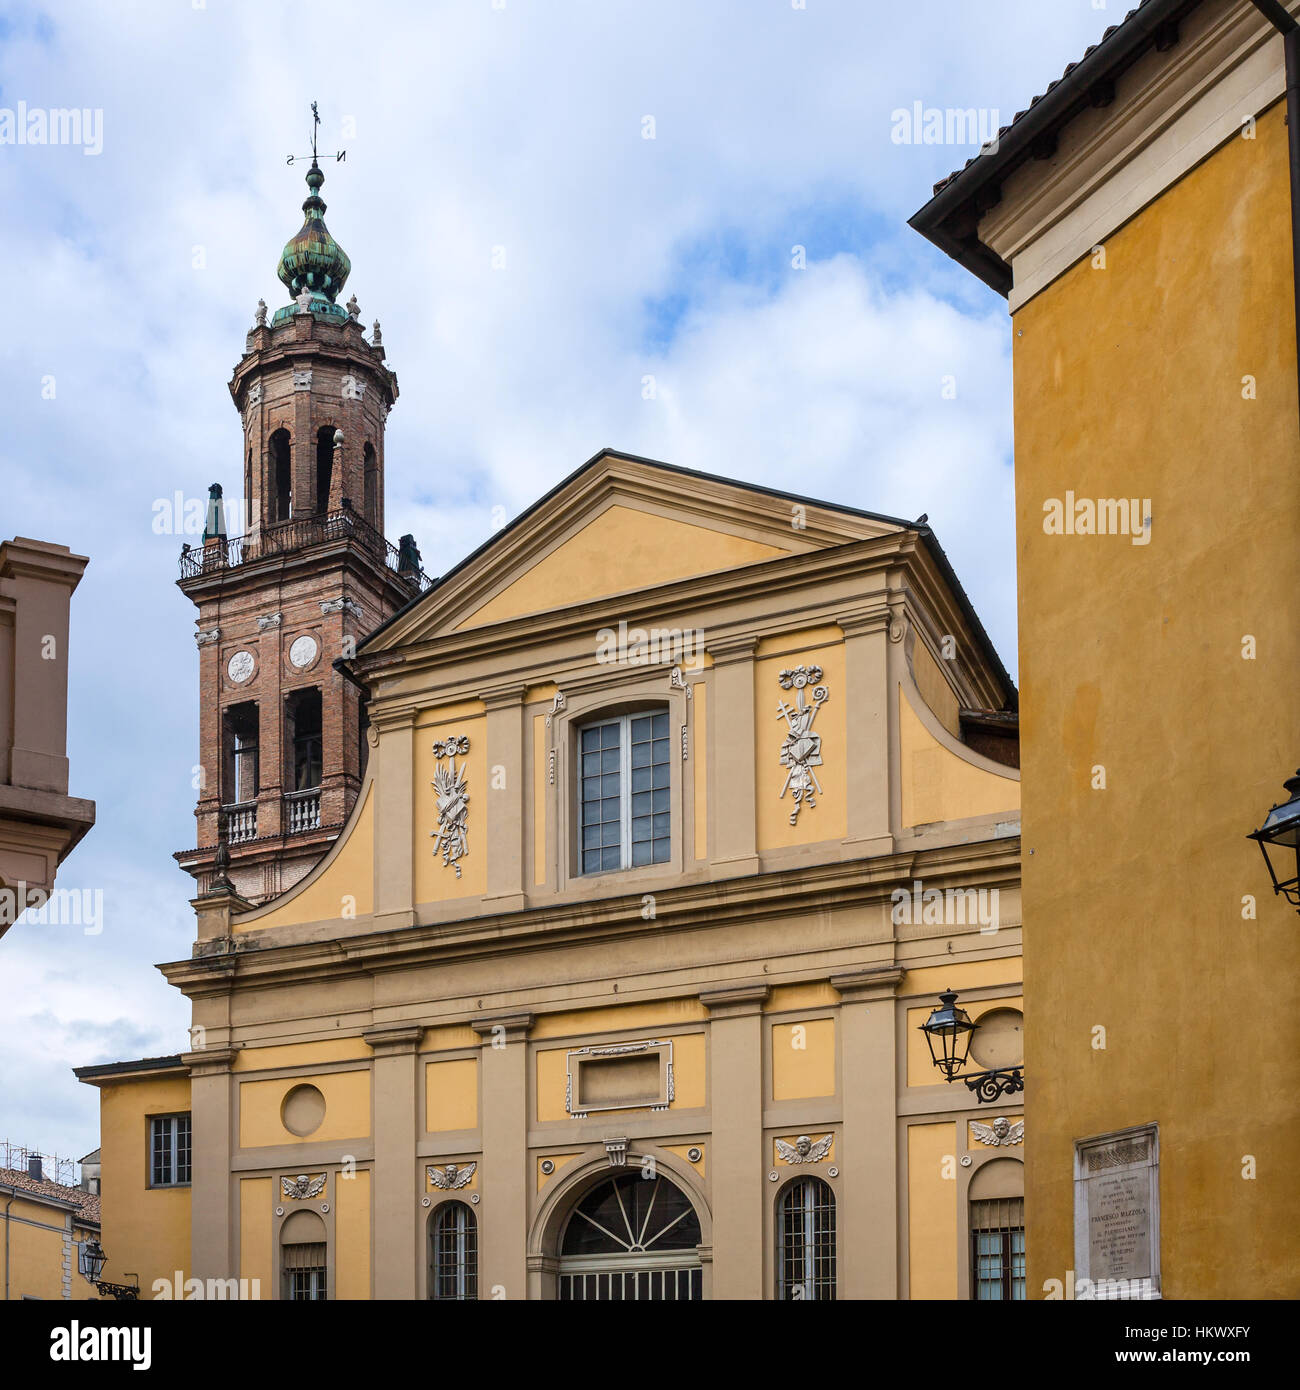 Reisen Sie nach Italien - Fassade der Pinacoteca Stuard im Flügel des ehemaligen Benediktiner-Kloster von San Paolo in Parma Stadt Stockfoto